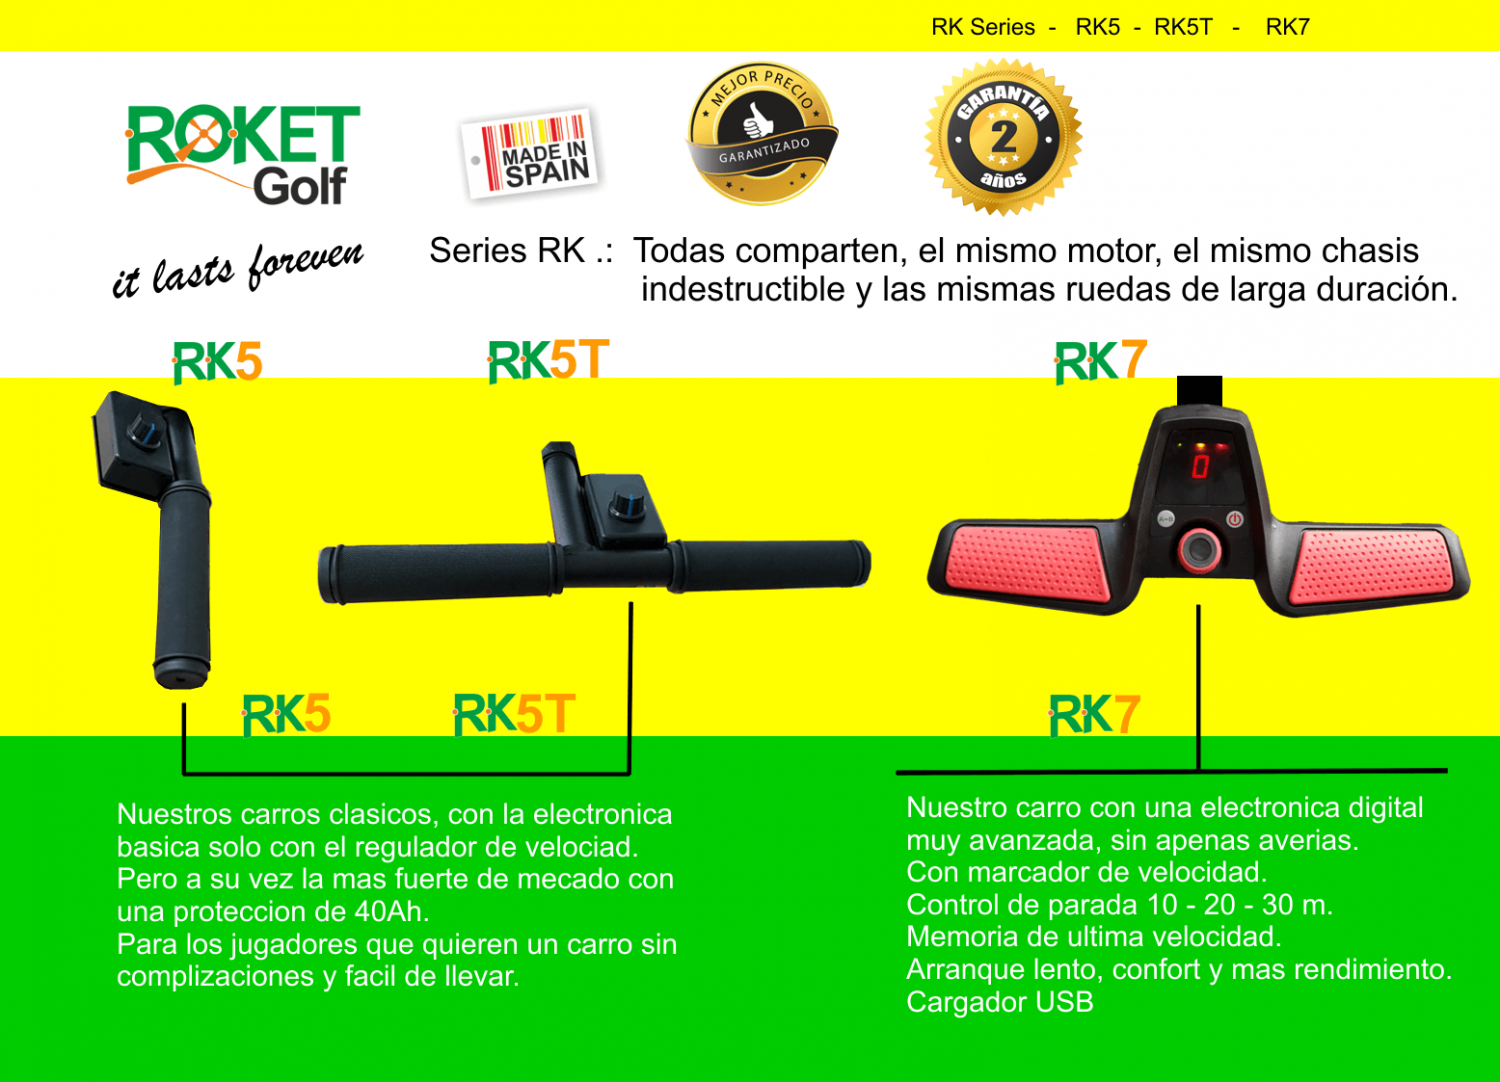 Carro de golf eléctrico ROKET RK5 con batería de Litio